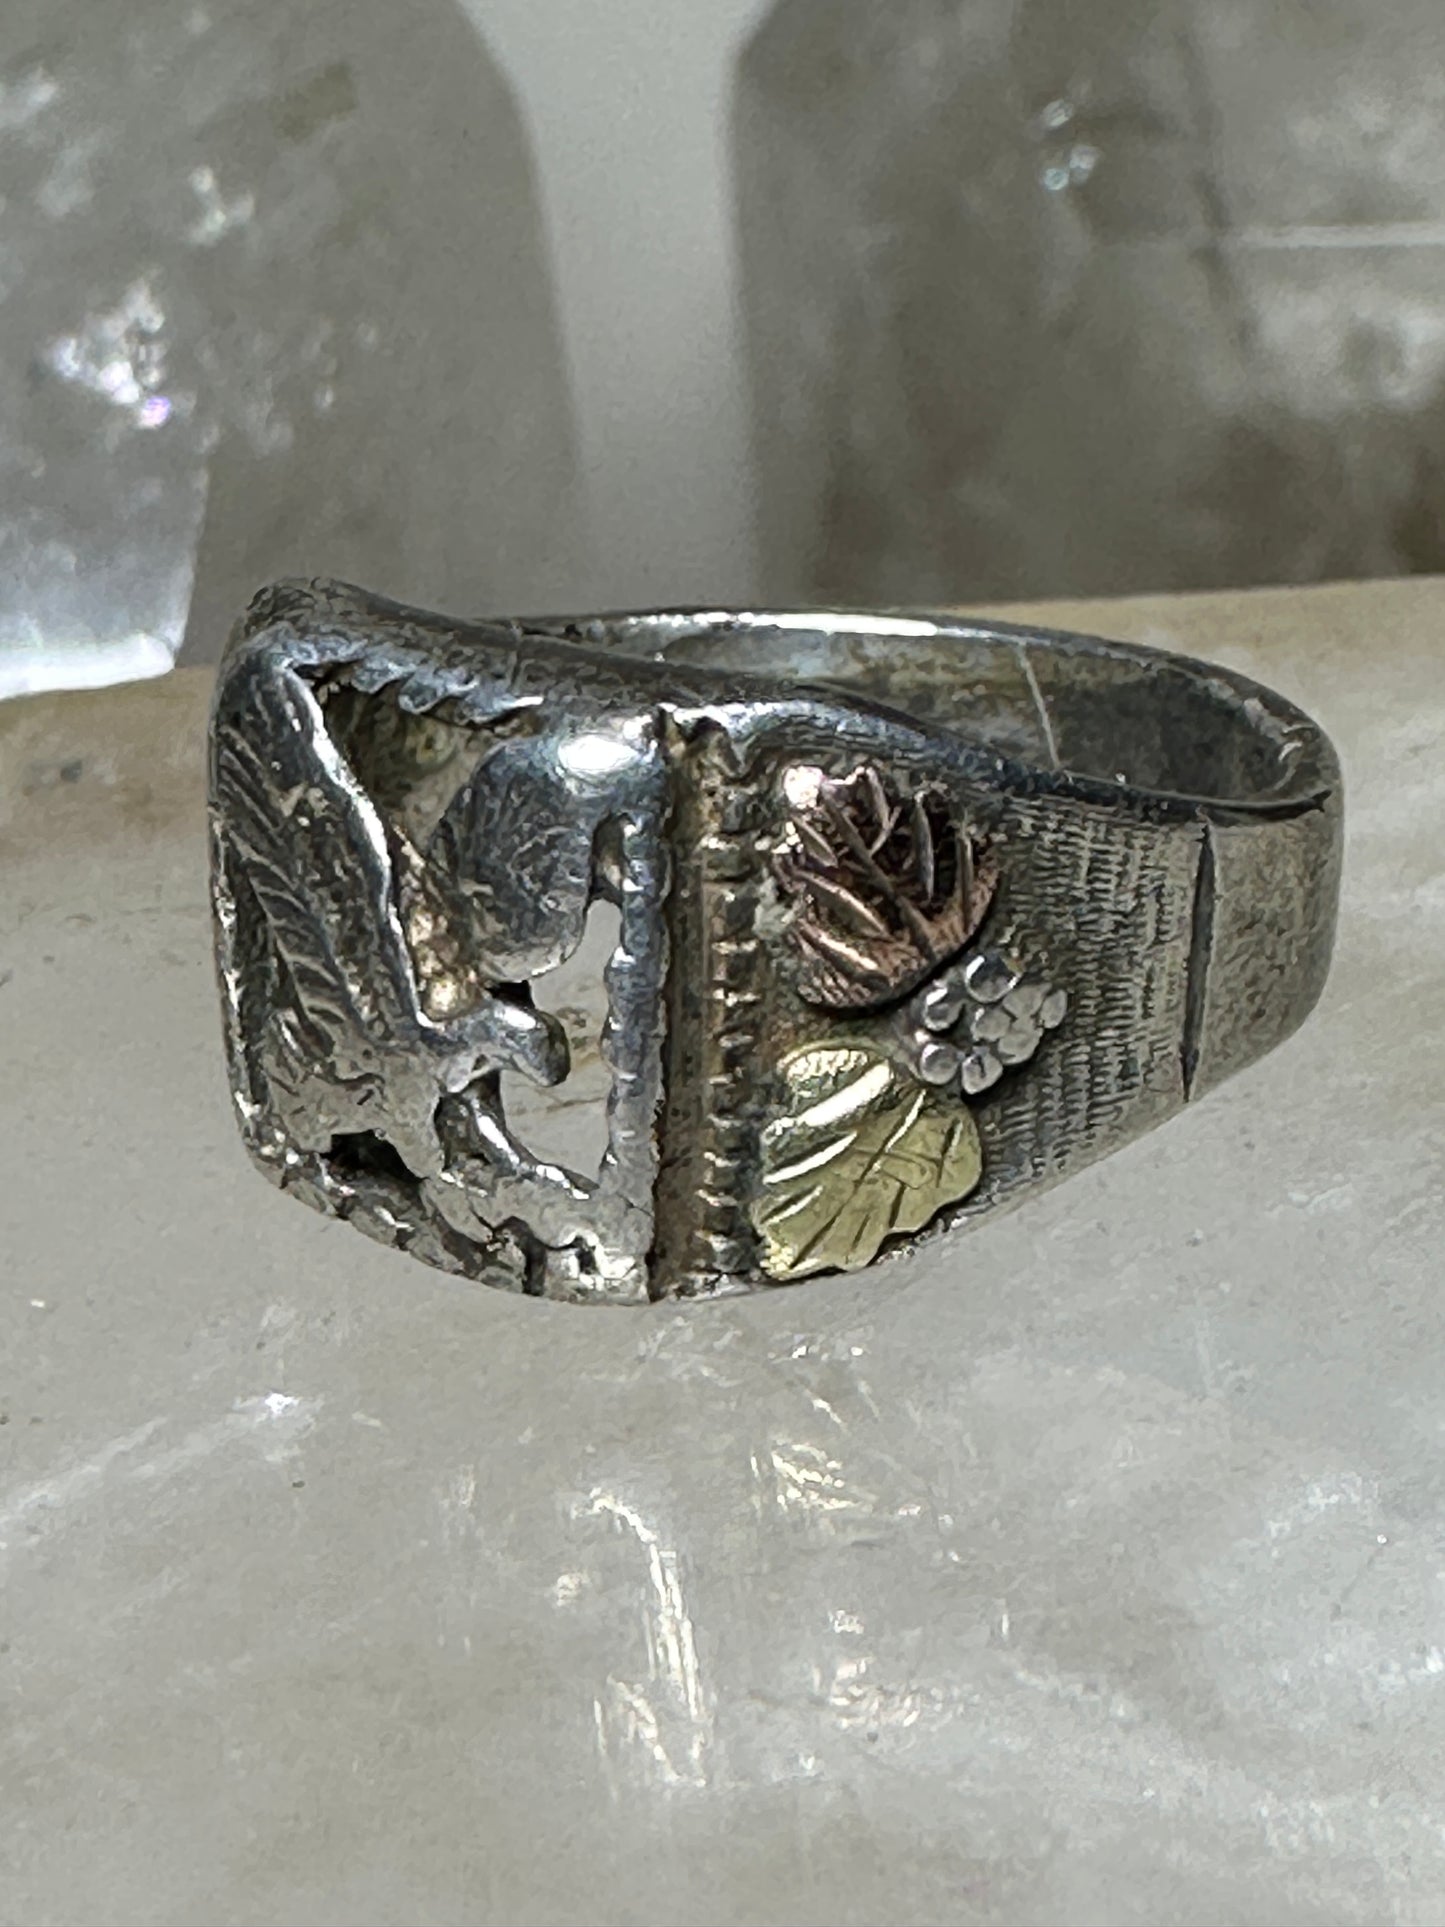 Black Hills Gold  ring Eagle leaves  size 8.75 sterling silver women men